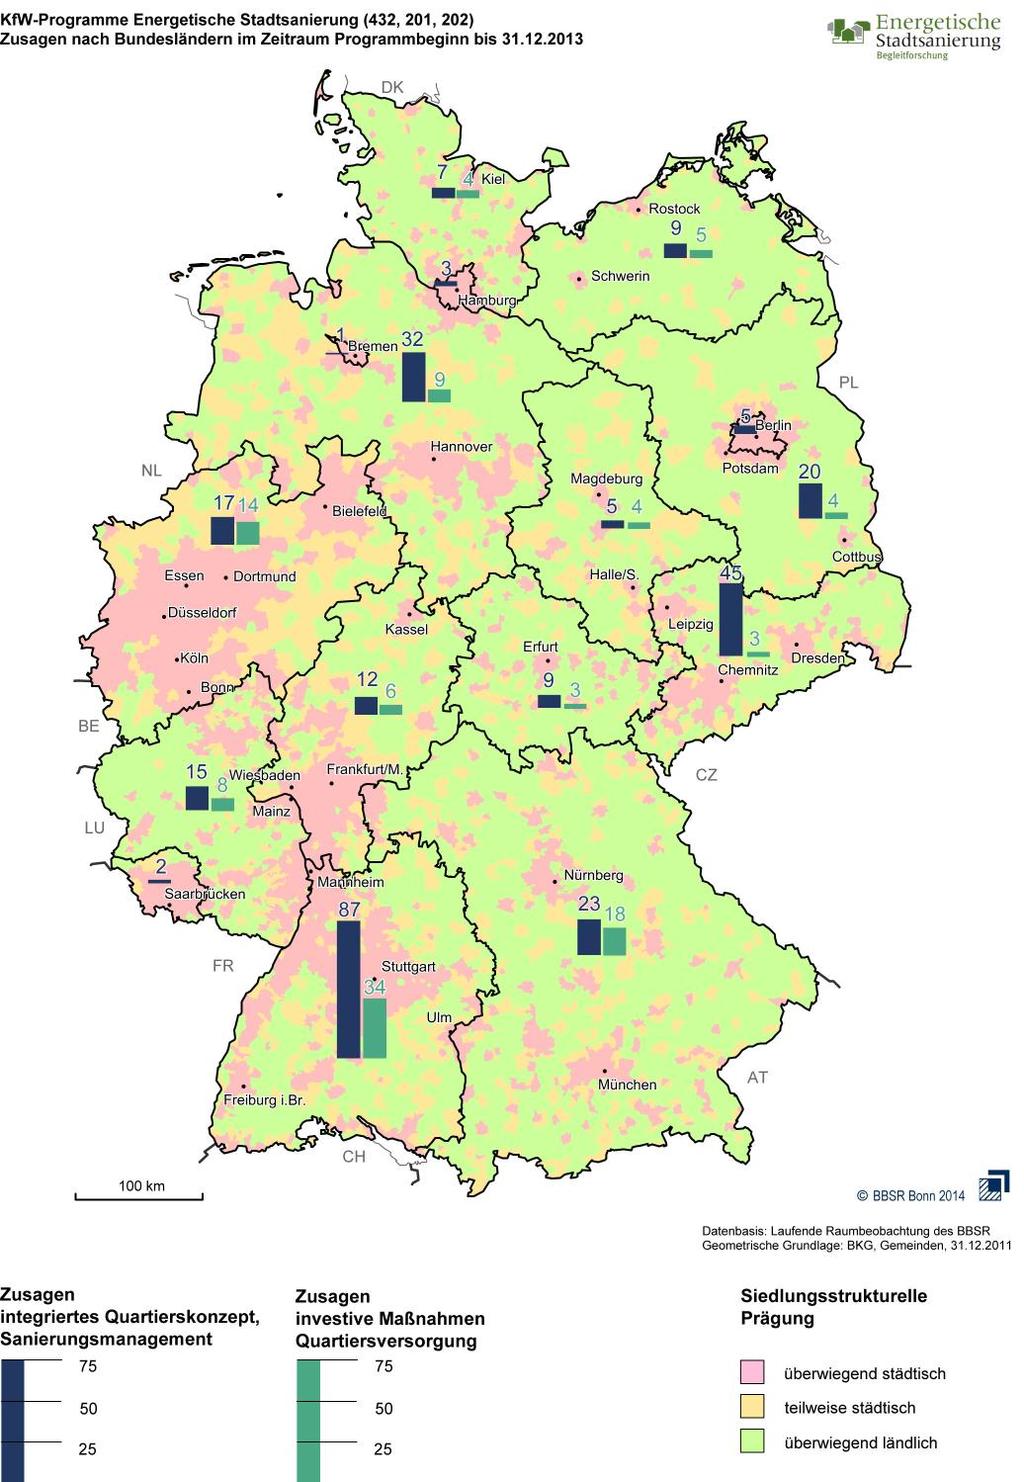 Quantitative Ergebnisse (Stand Dezember 2013): 60 % des Volumens entfällt auf 4 Bundesländer: Baden-Württemberg, Sachsen, Niedersachsen, Nordrhein-Westfalen In Nordrhein-Westfalen